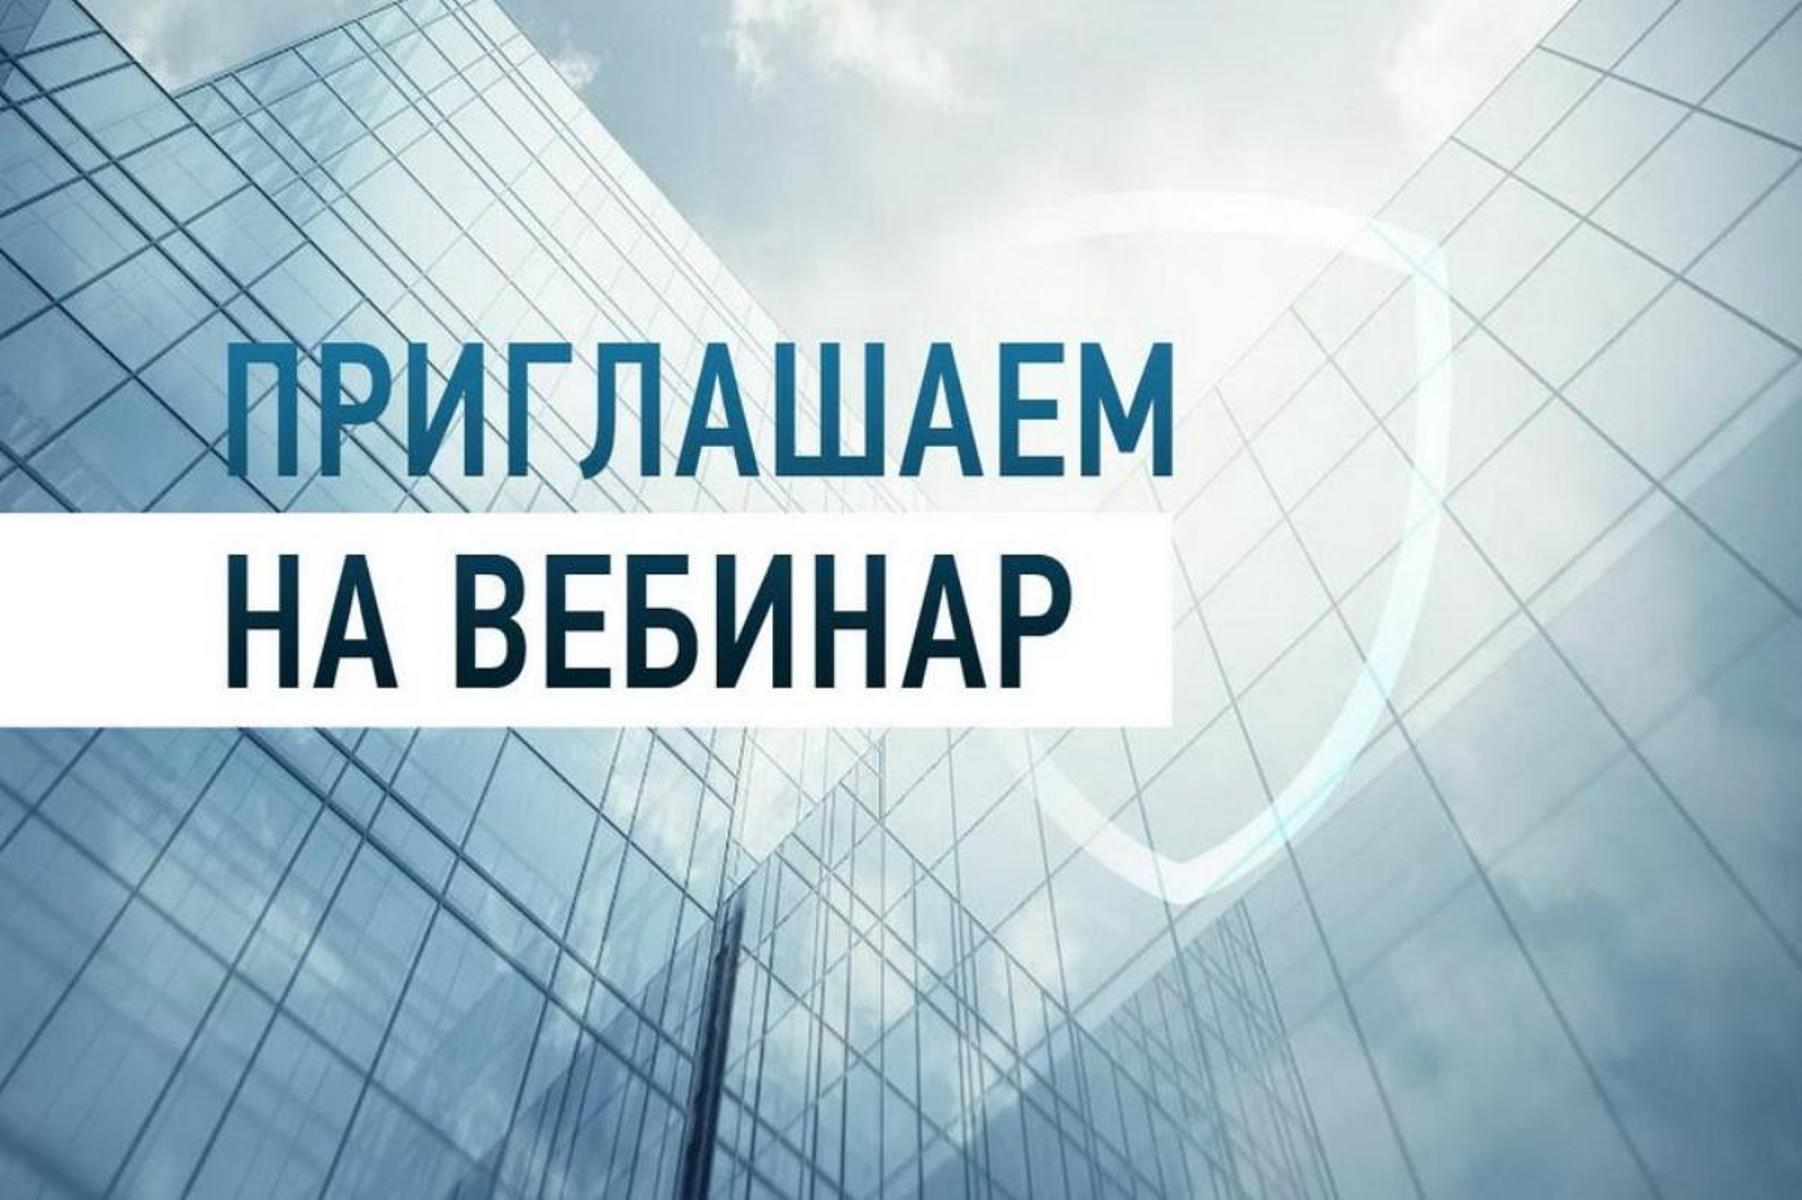 Банк России вебинар. Вебинар для предпринимателей. Вебинар банка России. Приглашаем на вебинар.